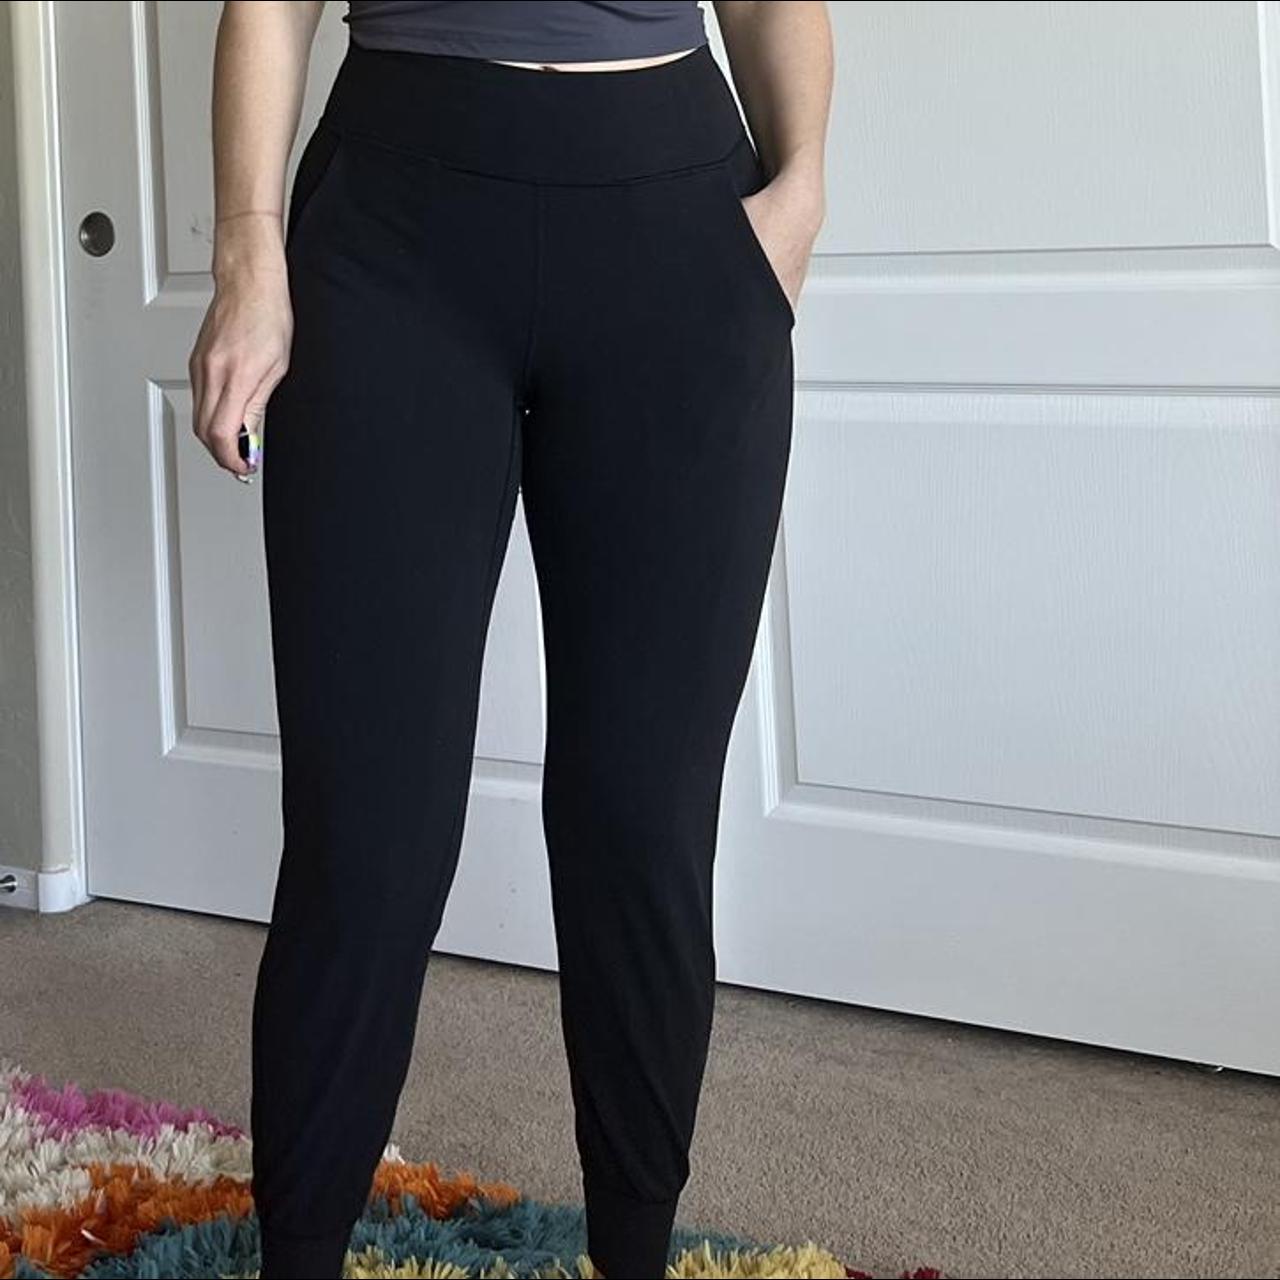 Lululemon jogger leggings, Black leggings with